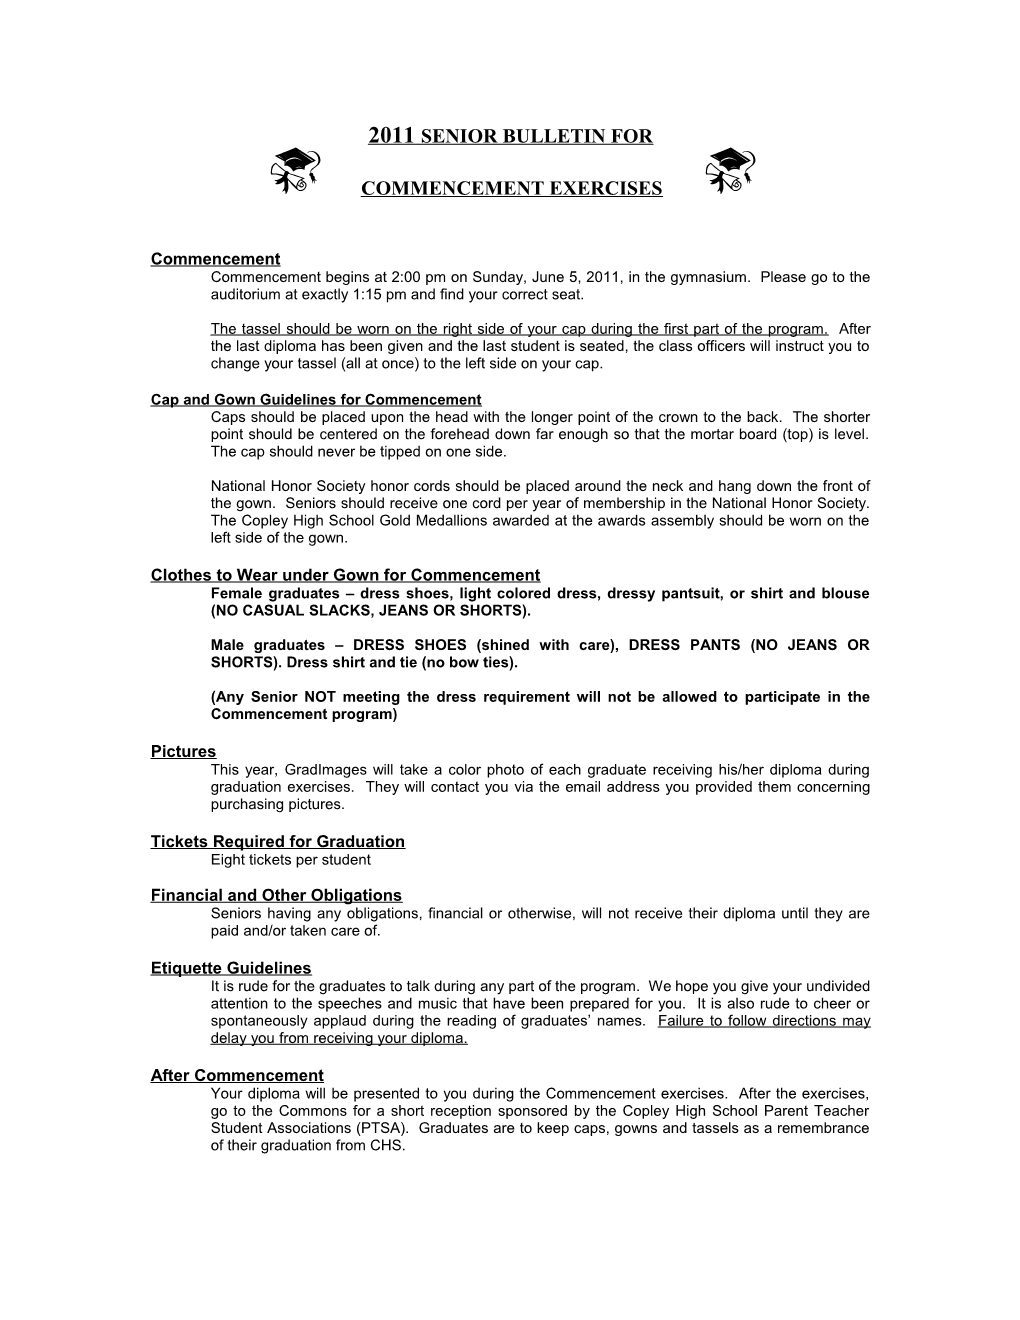 2008 Senior Bulletin for Commencement Exercises